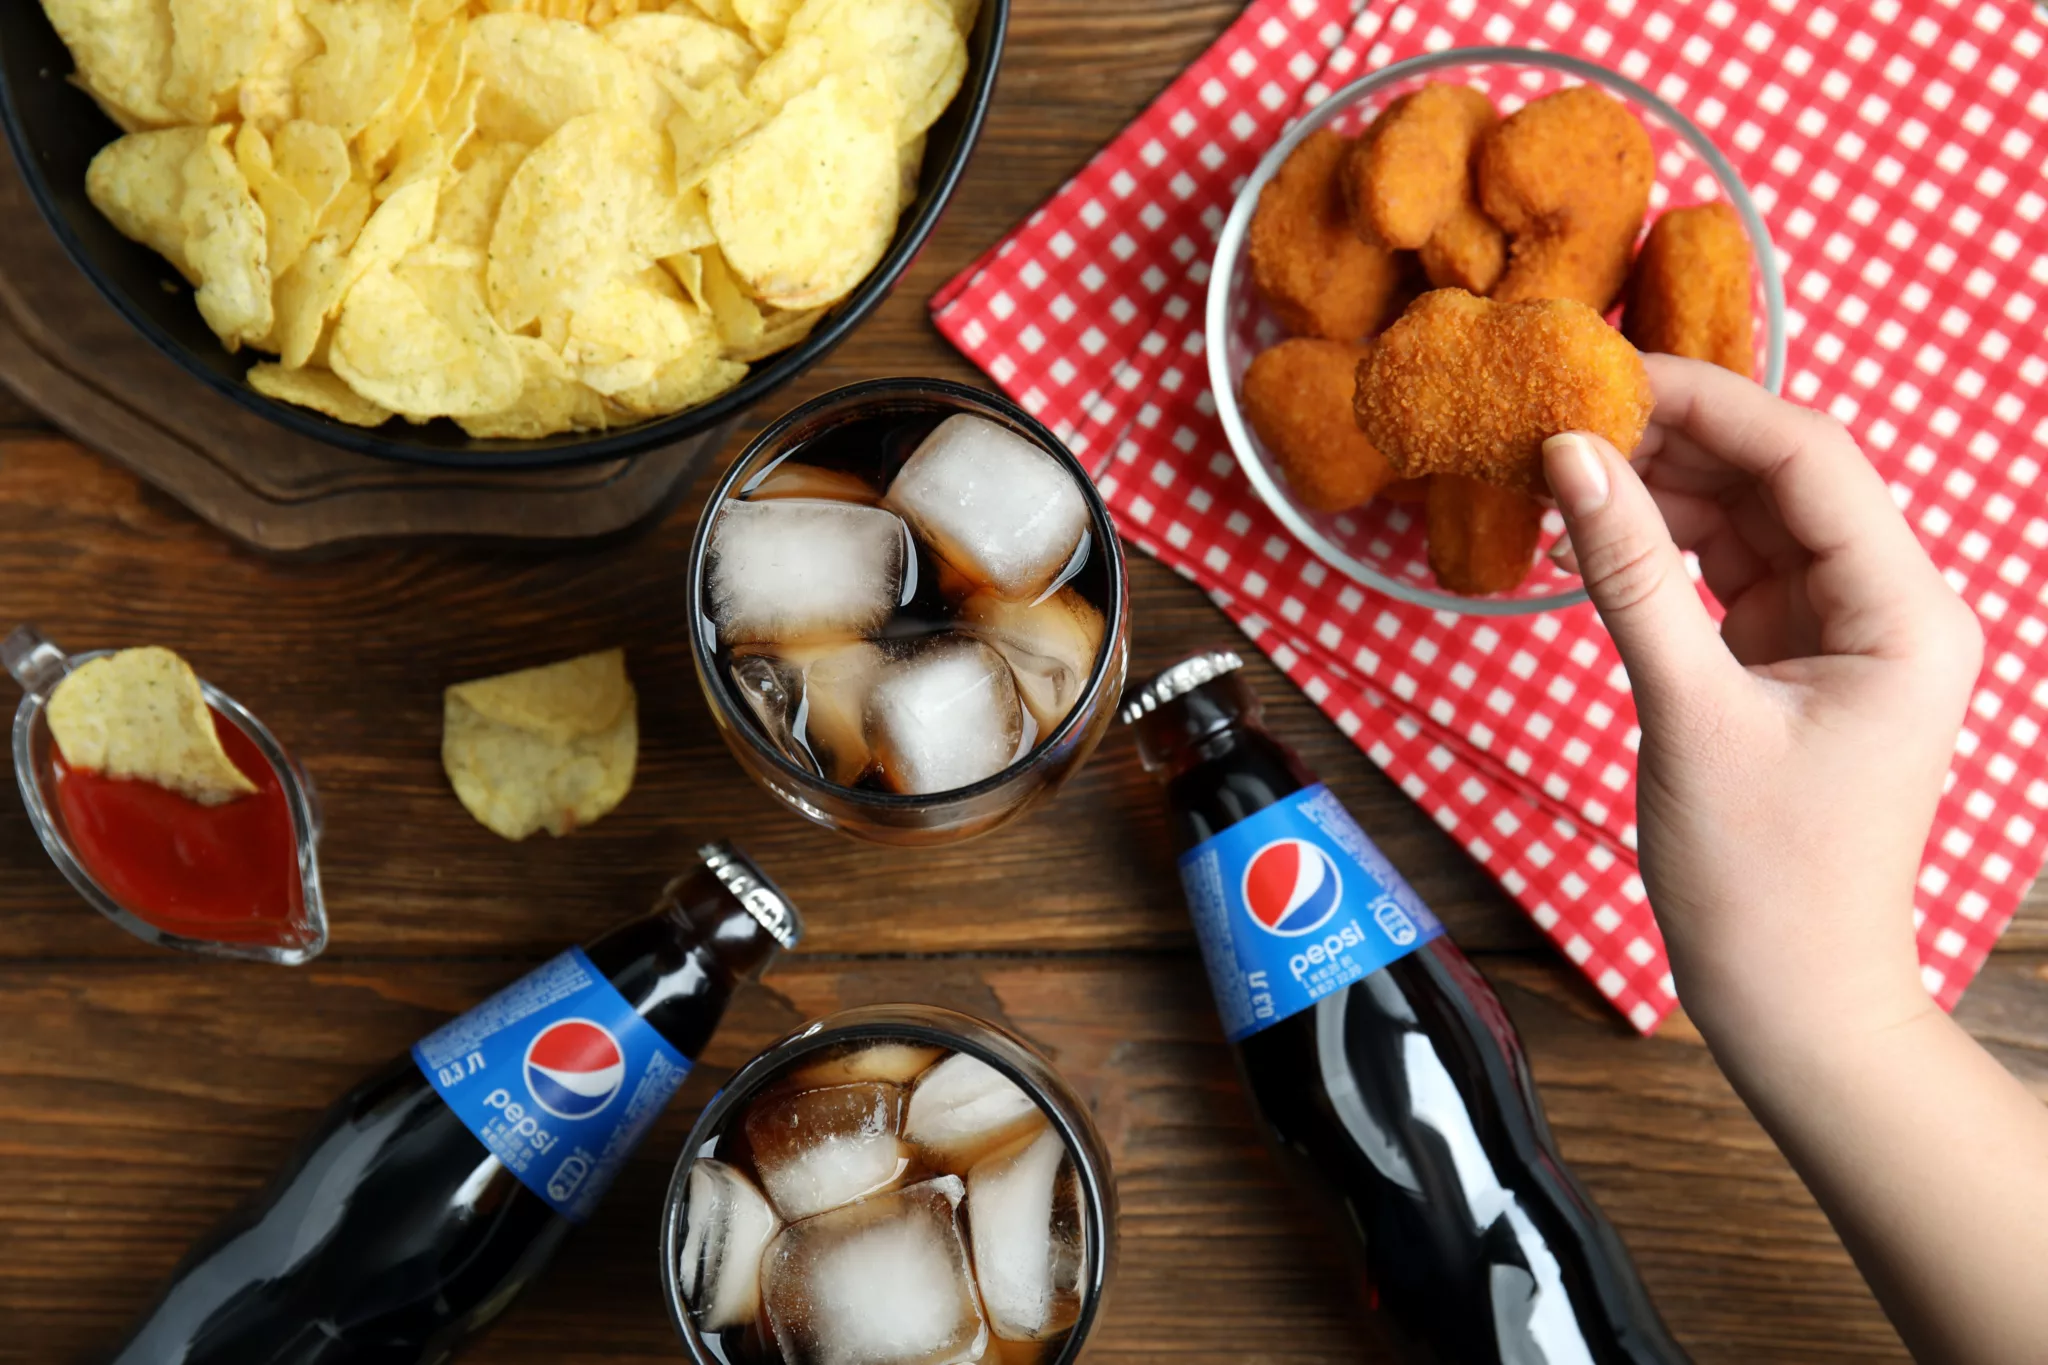 Chiến dịch quảng cáo của Pepsi